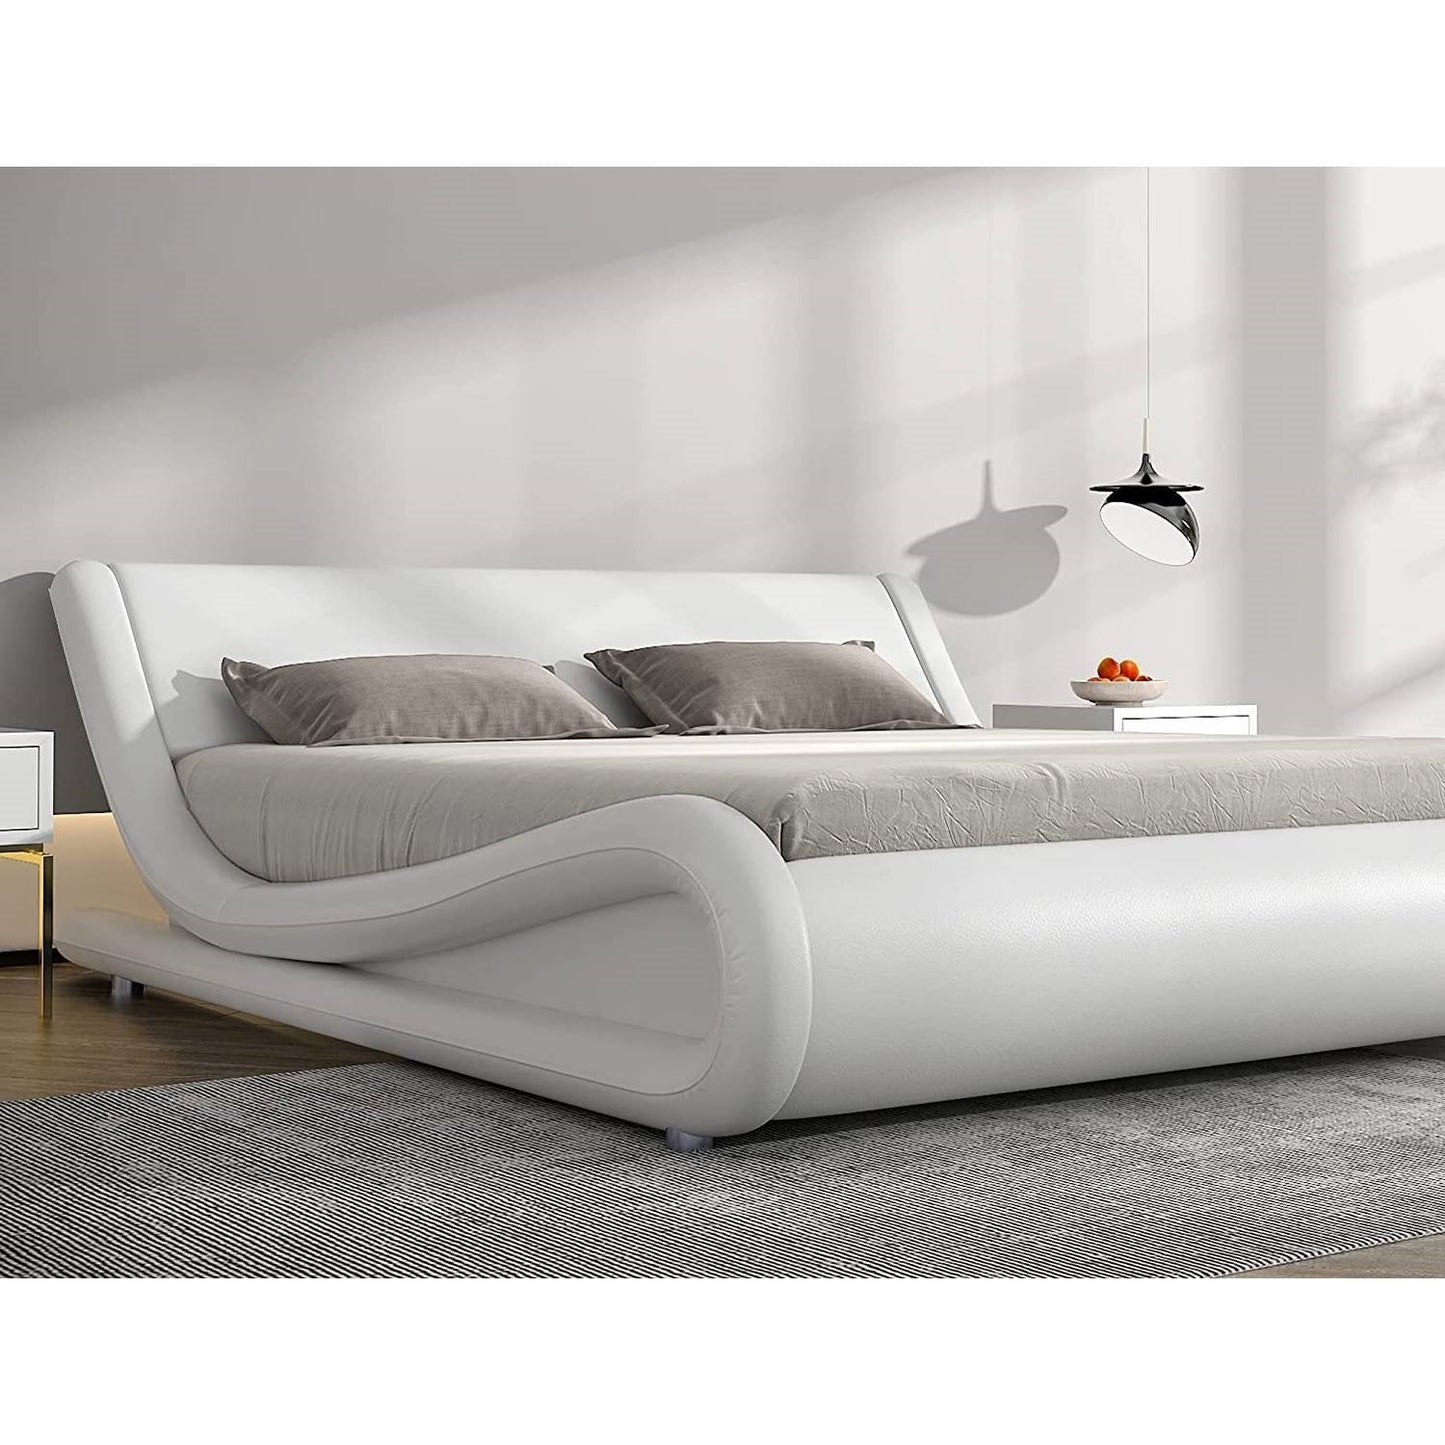 Bedroom > Bed Frames > Platform Beds - Queen Modern White Faux Leather Upholstered Platform Bed Frame With Headboard